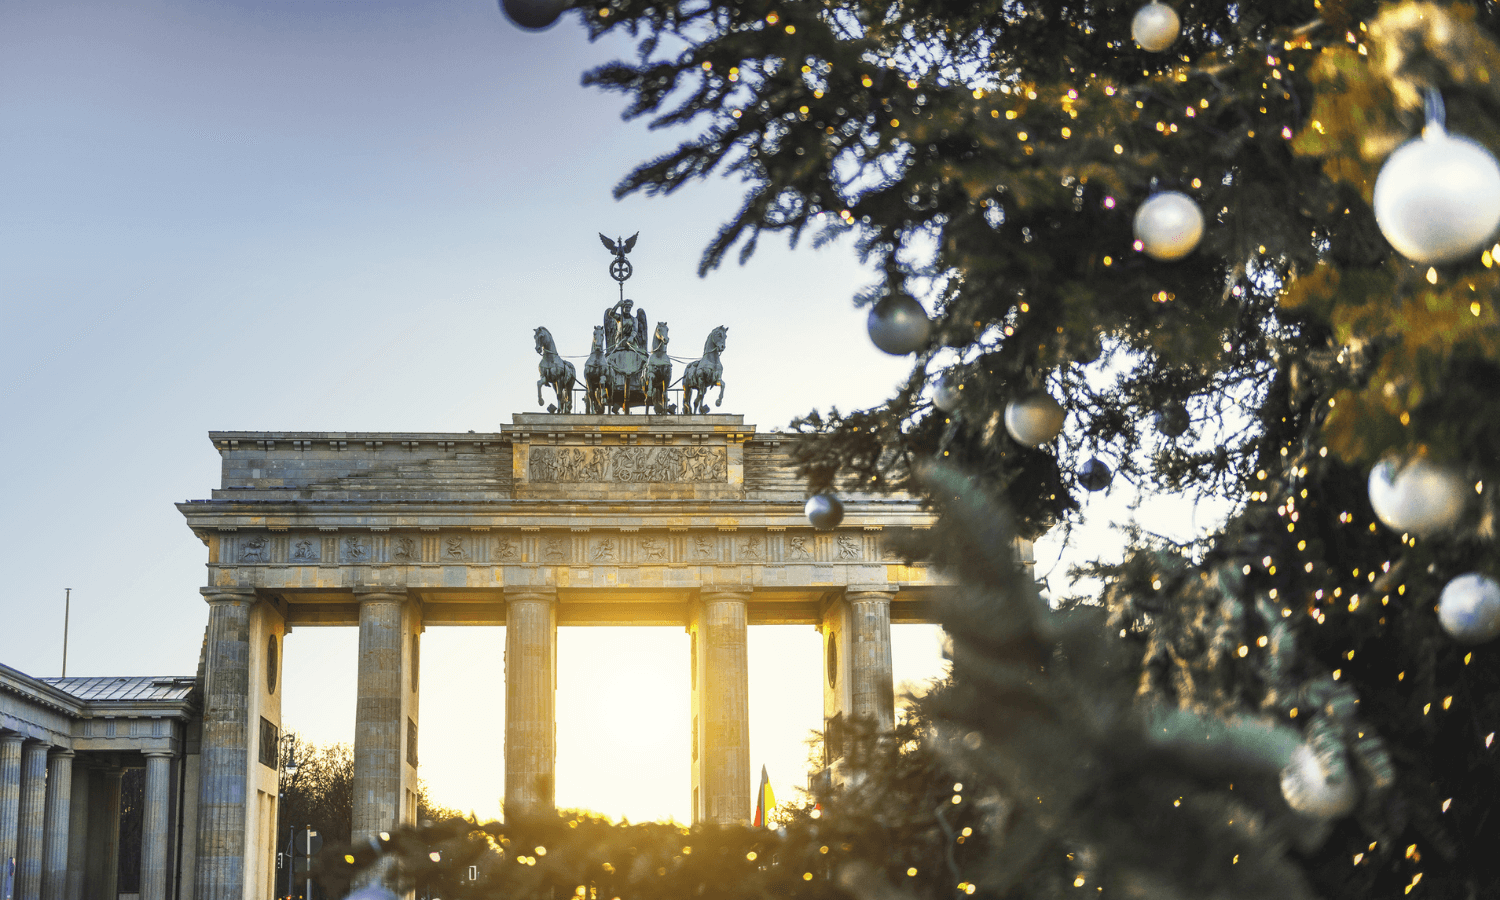 Vor dem Brandenburger Tor in Berlin steht zu Weihnachten eine große, festlich geschmückte Tanne. © iStock.com